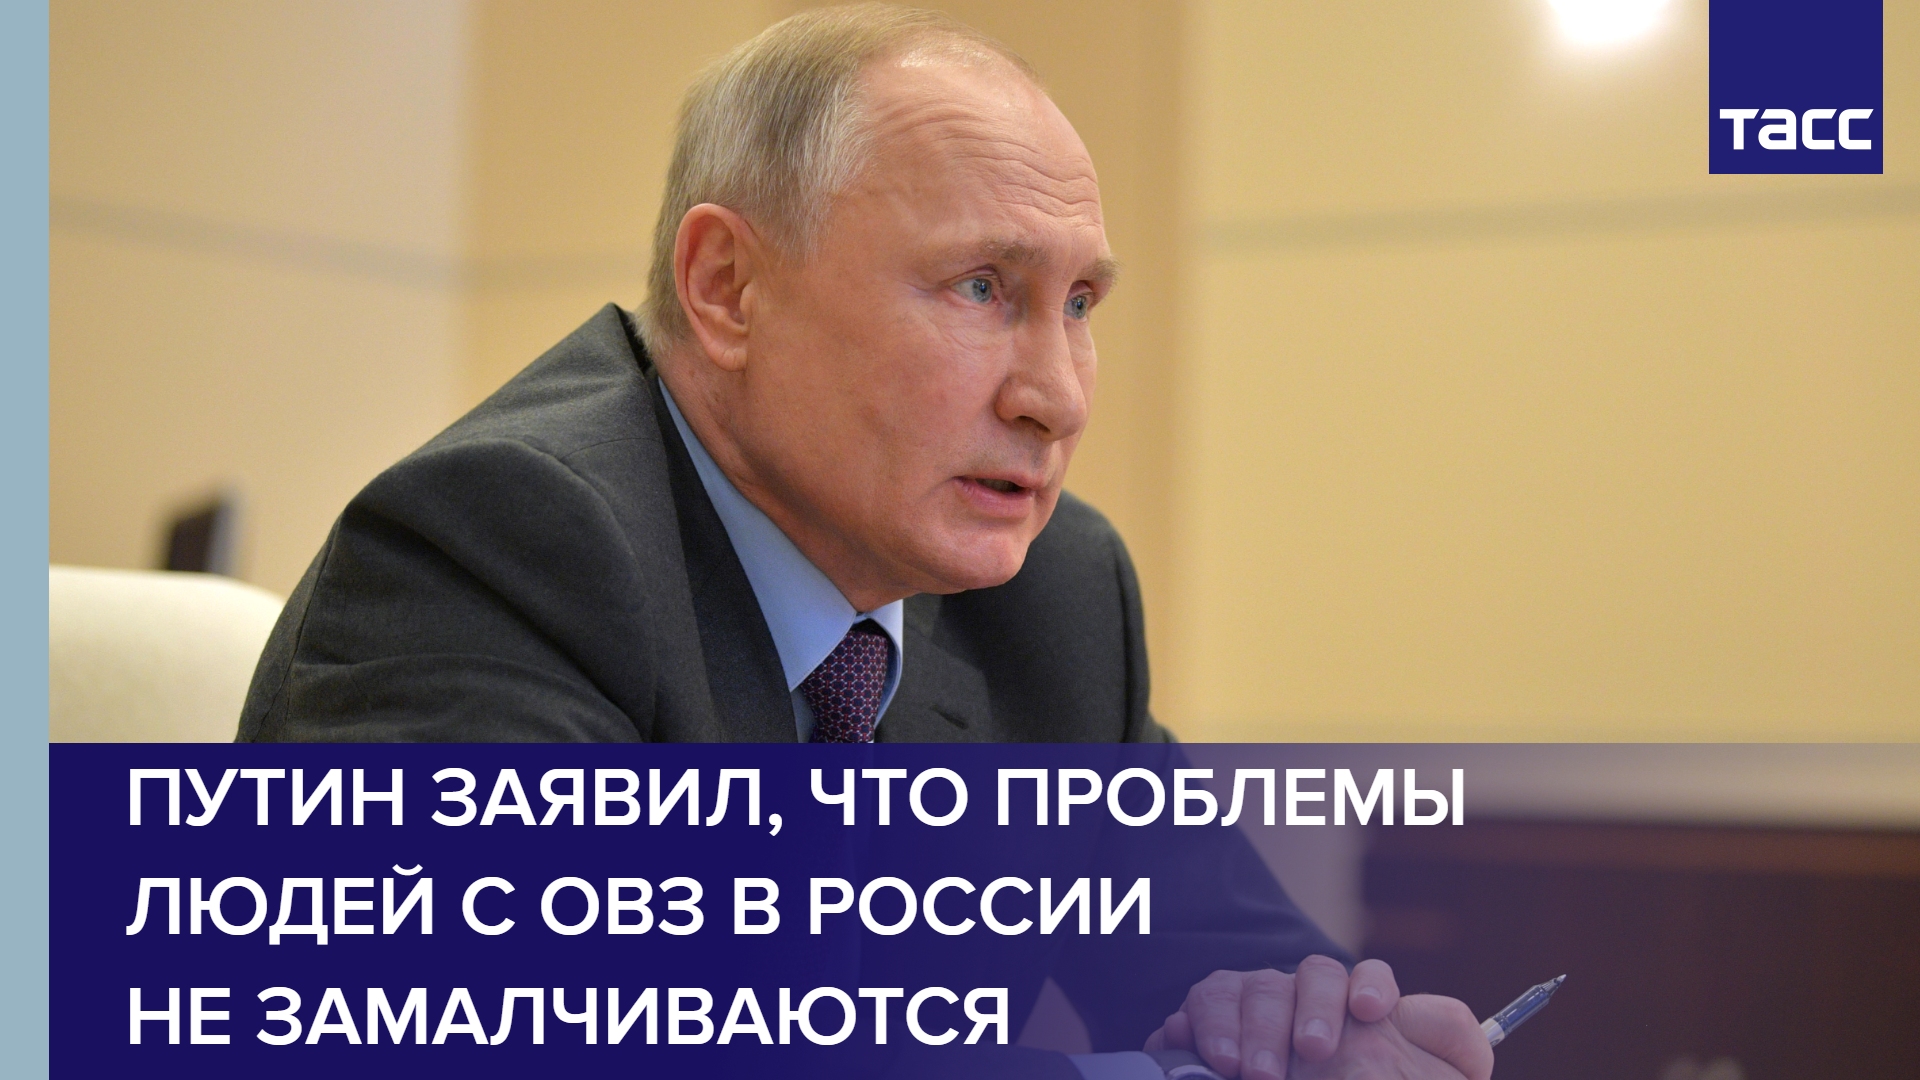 Путин заявил, что проблемы людей с ОВЗ в России не замалчиваются